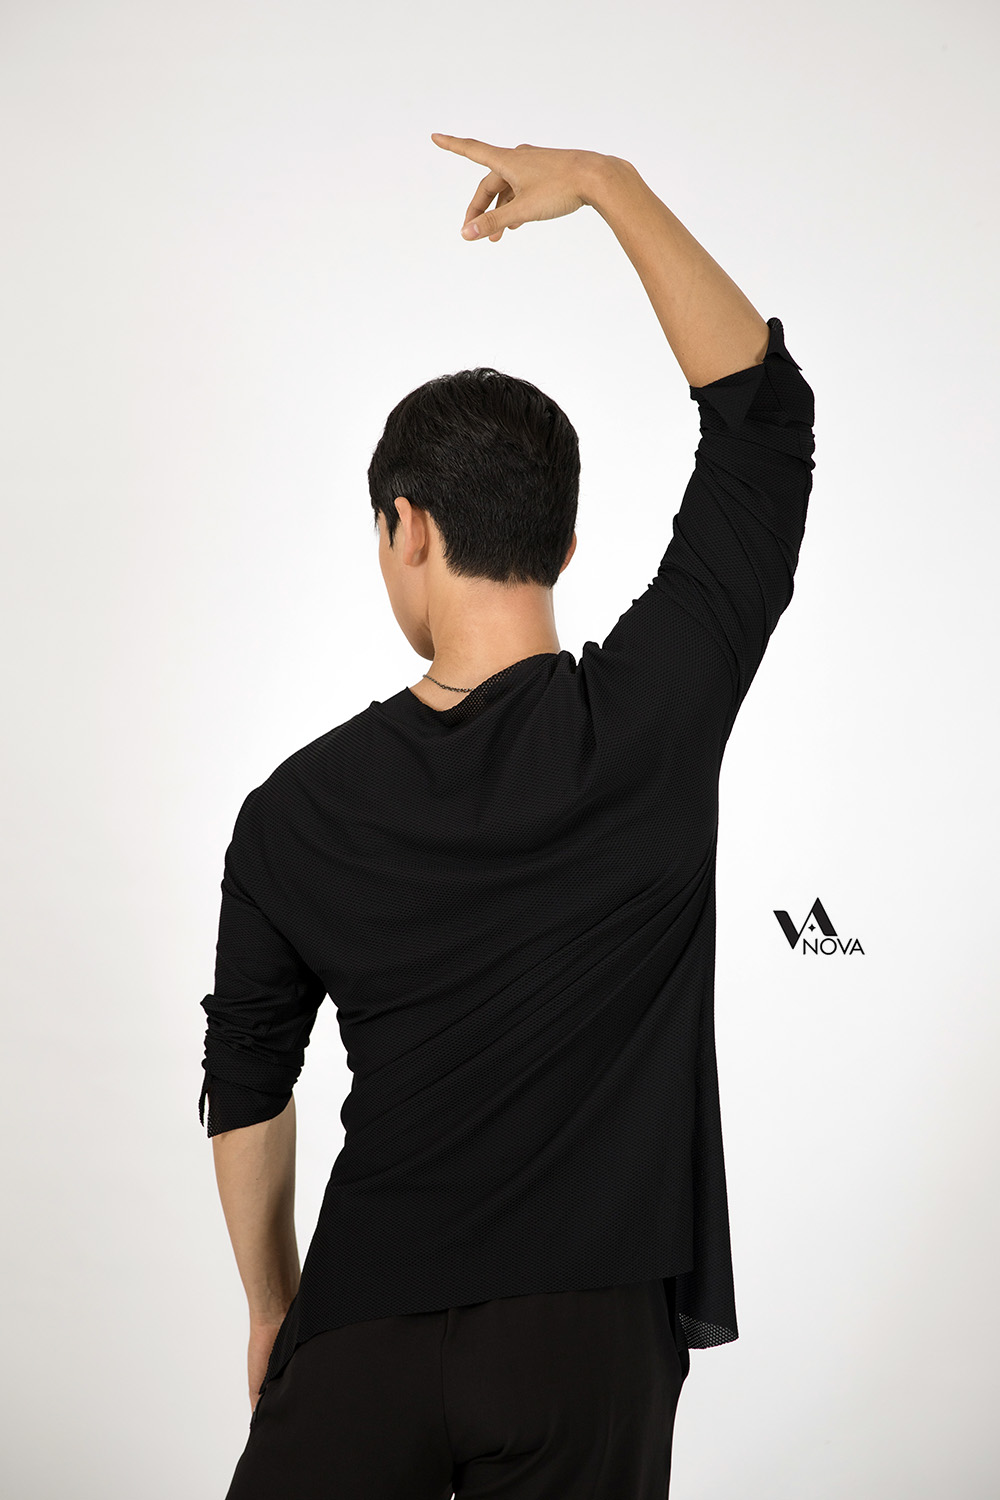 Men's Black Honeycomb Practice T- Shirt